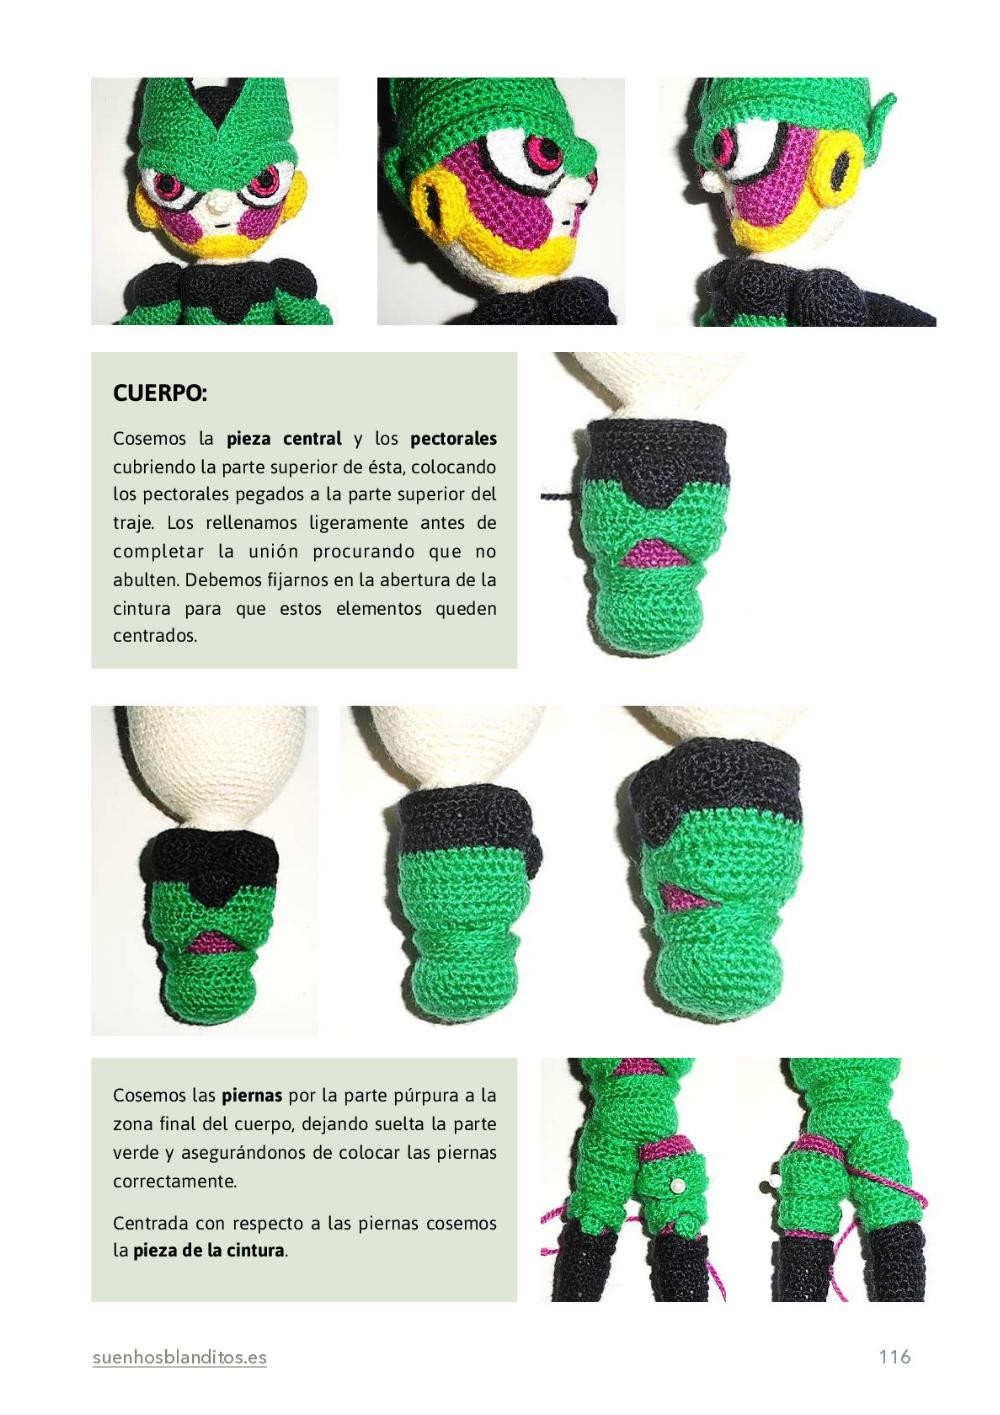 Tutorial de crochet de personajes de Dragon Ball para principiantes y avanzados